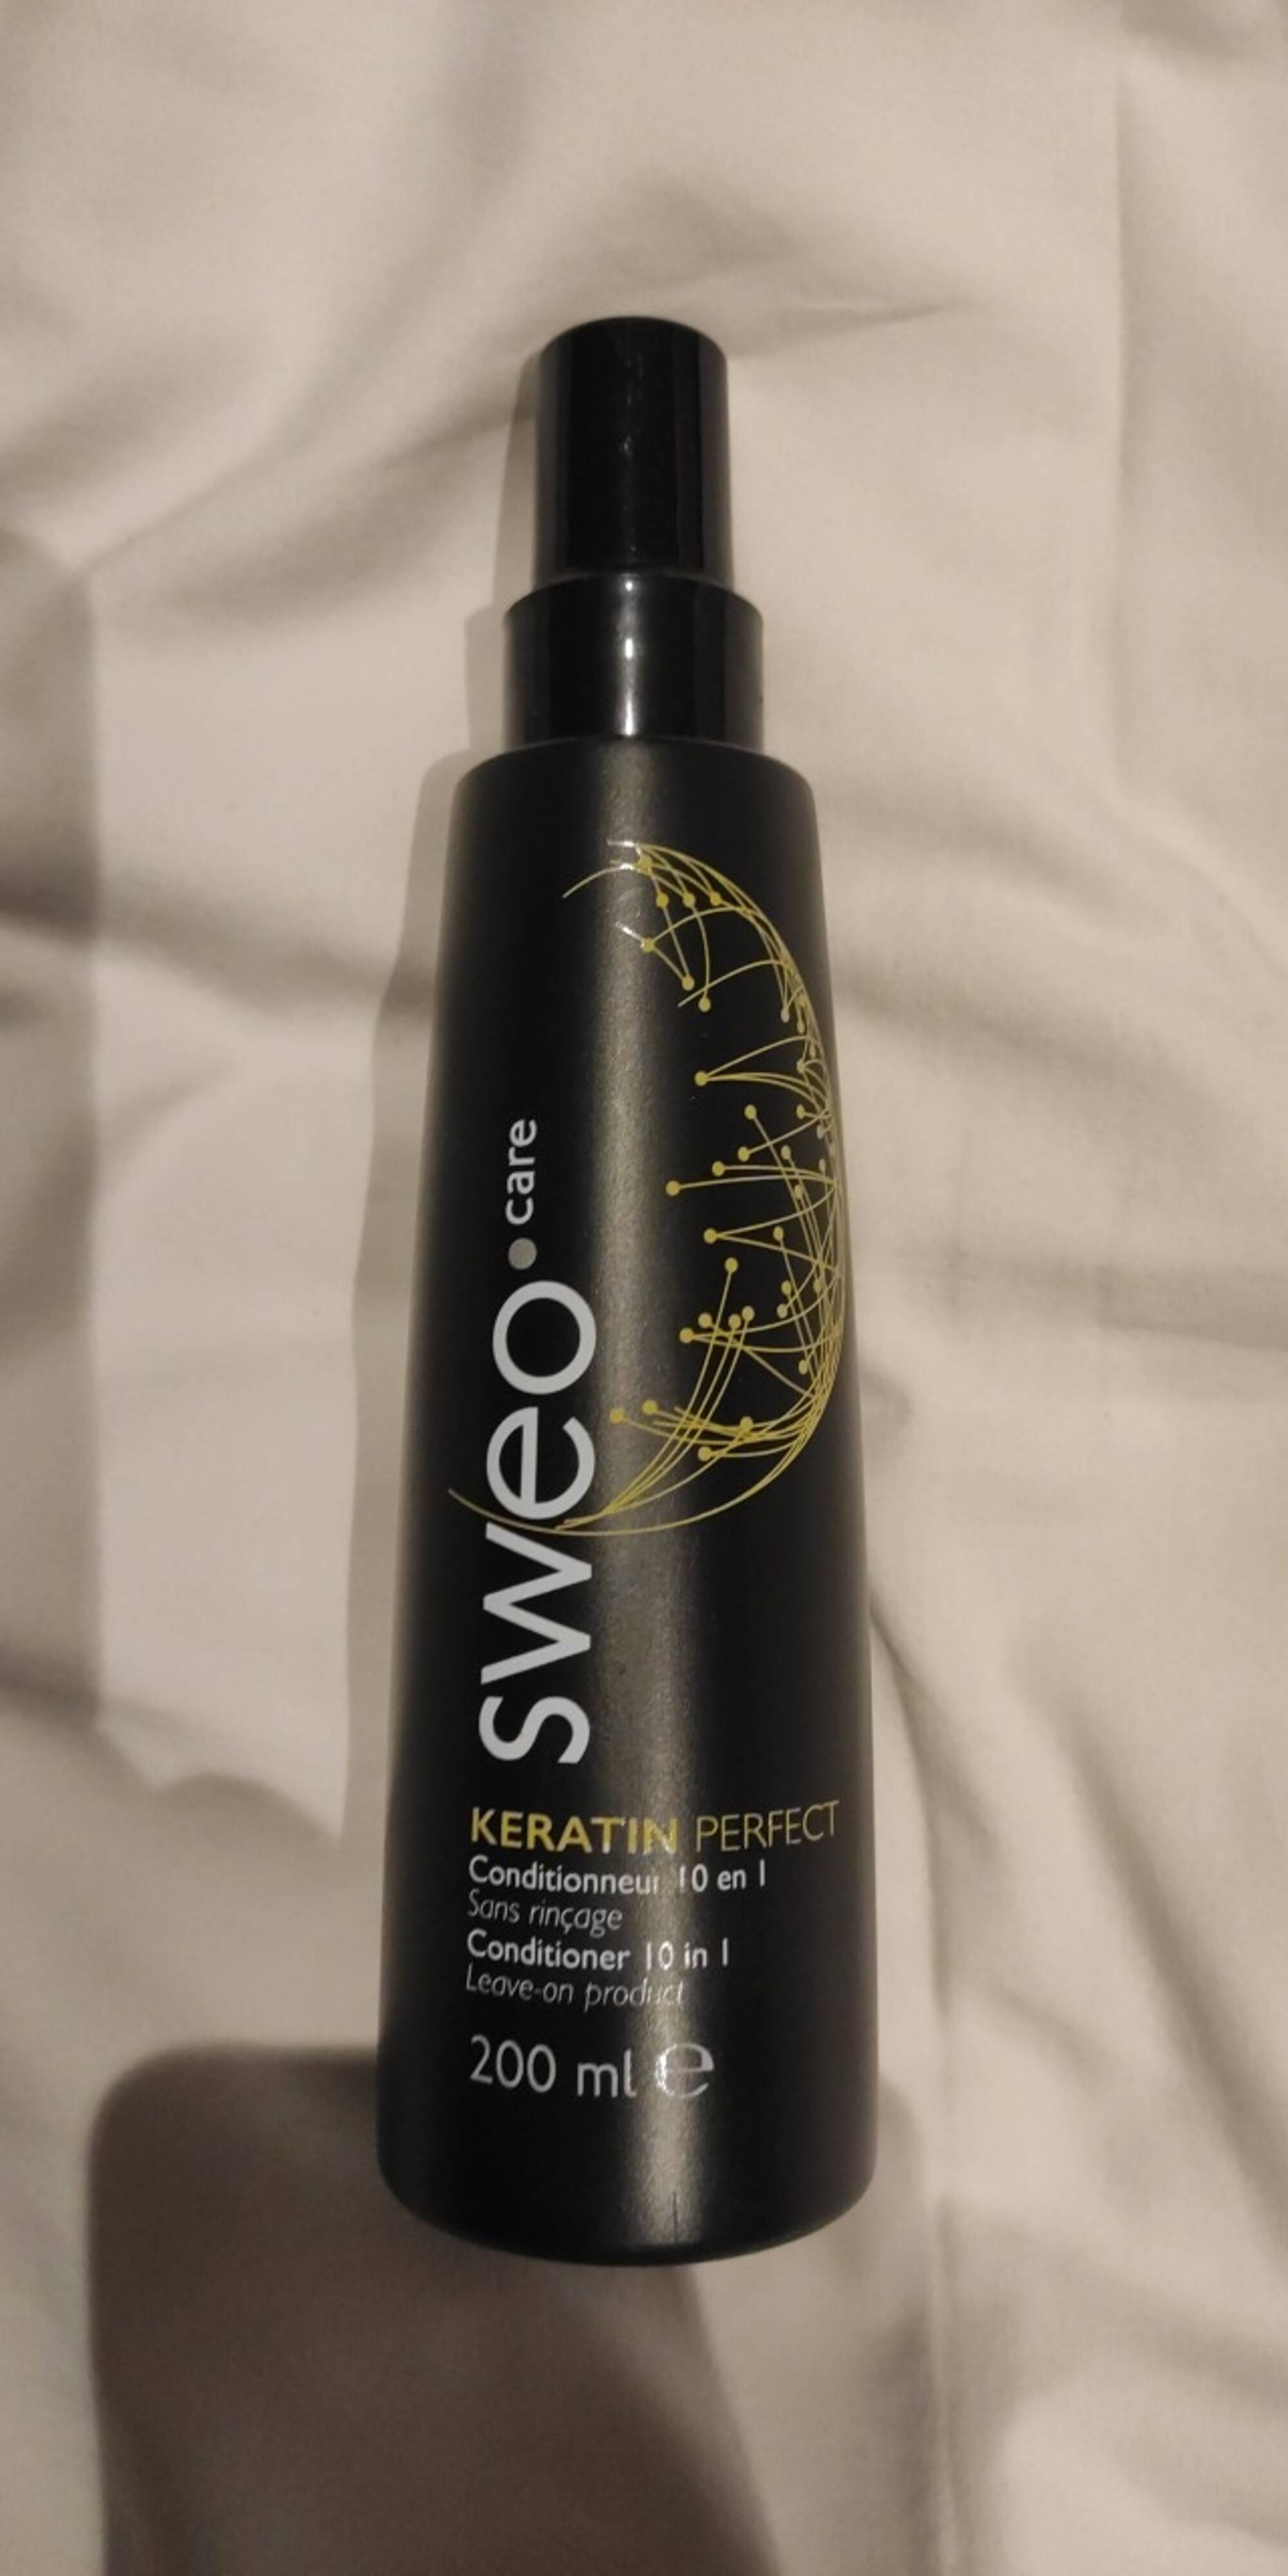 SWEO - Keratin perfect - Conditionneur 10 en 1 sans rinçage